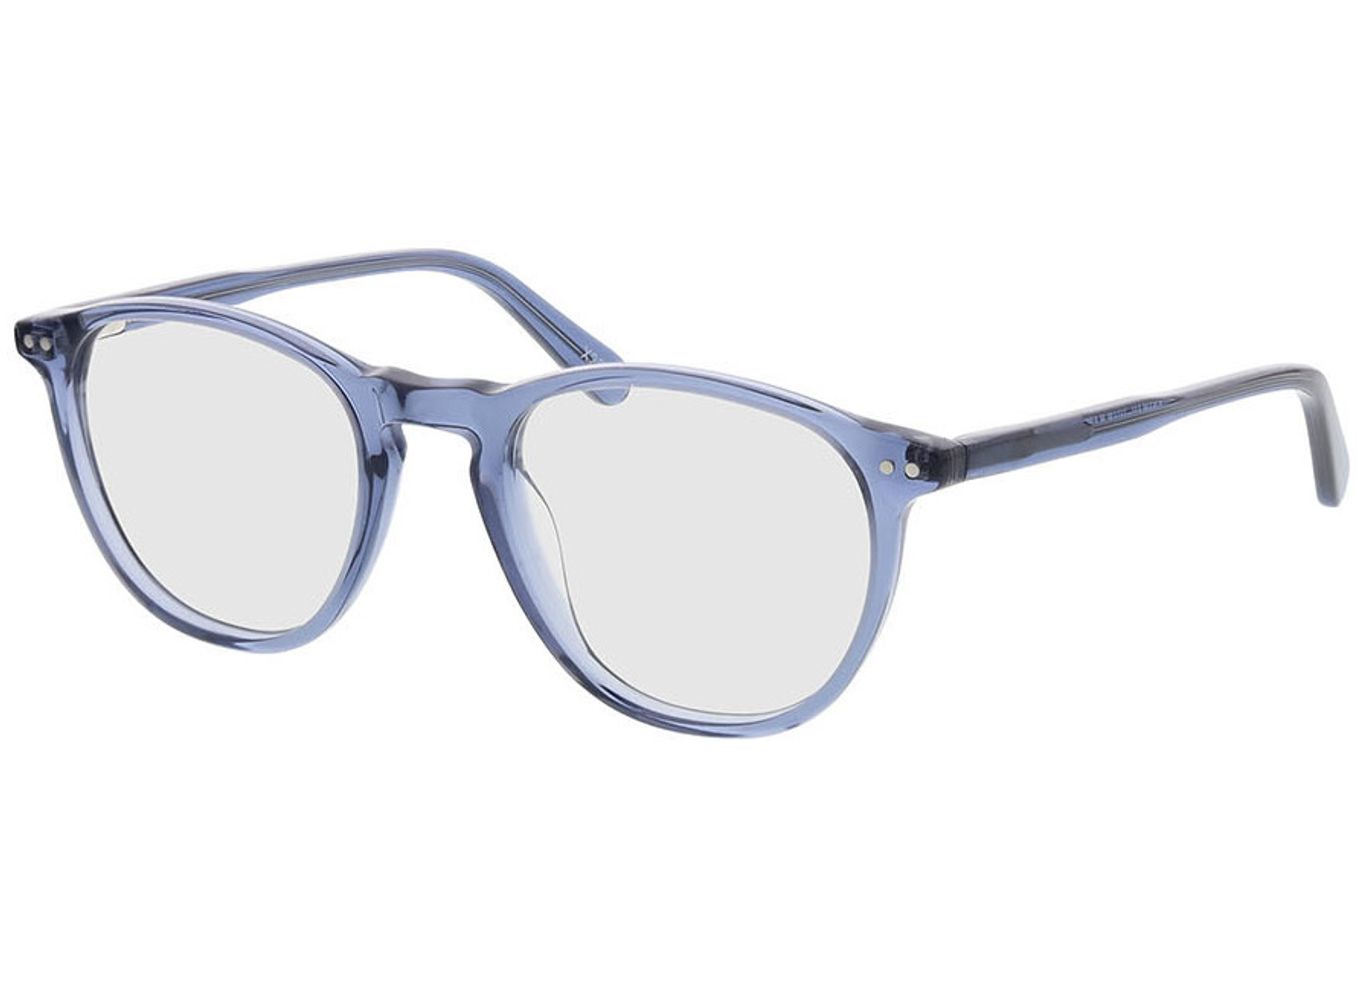 Alvin - blau Gleitsichtbrille, Vollrand, Rund von Brille24 Collection